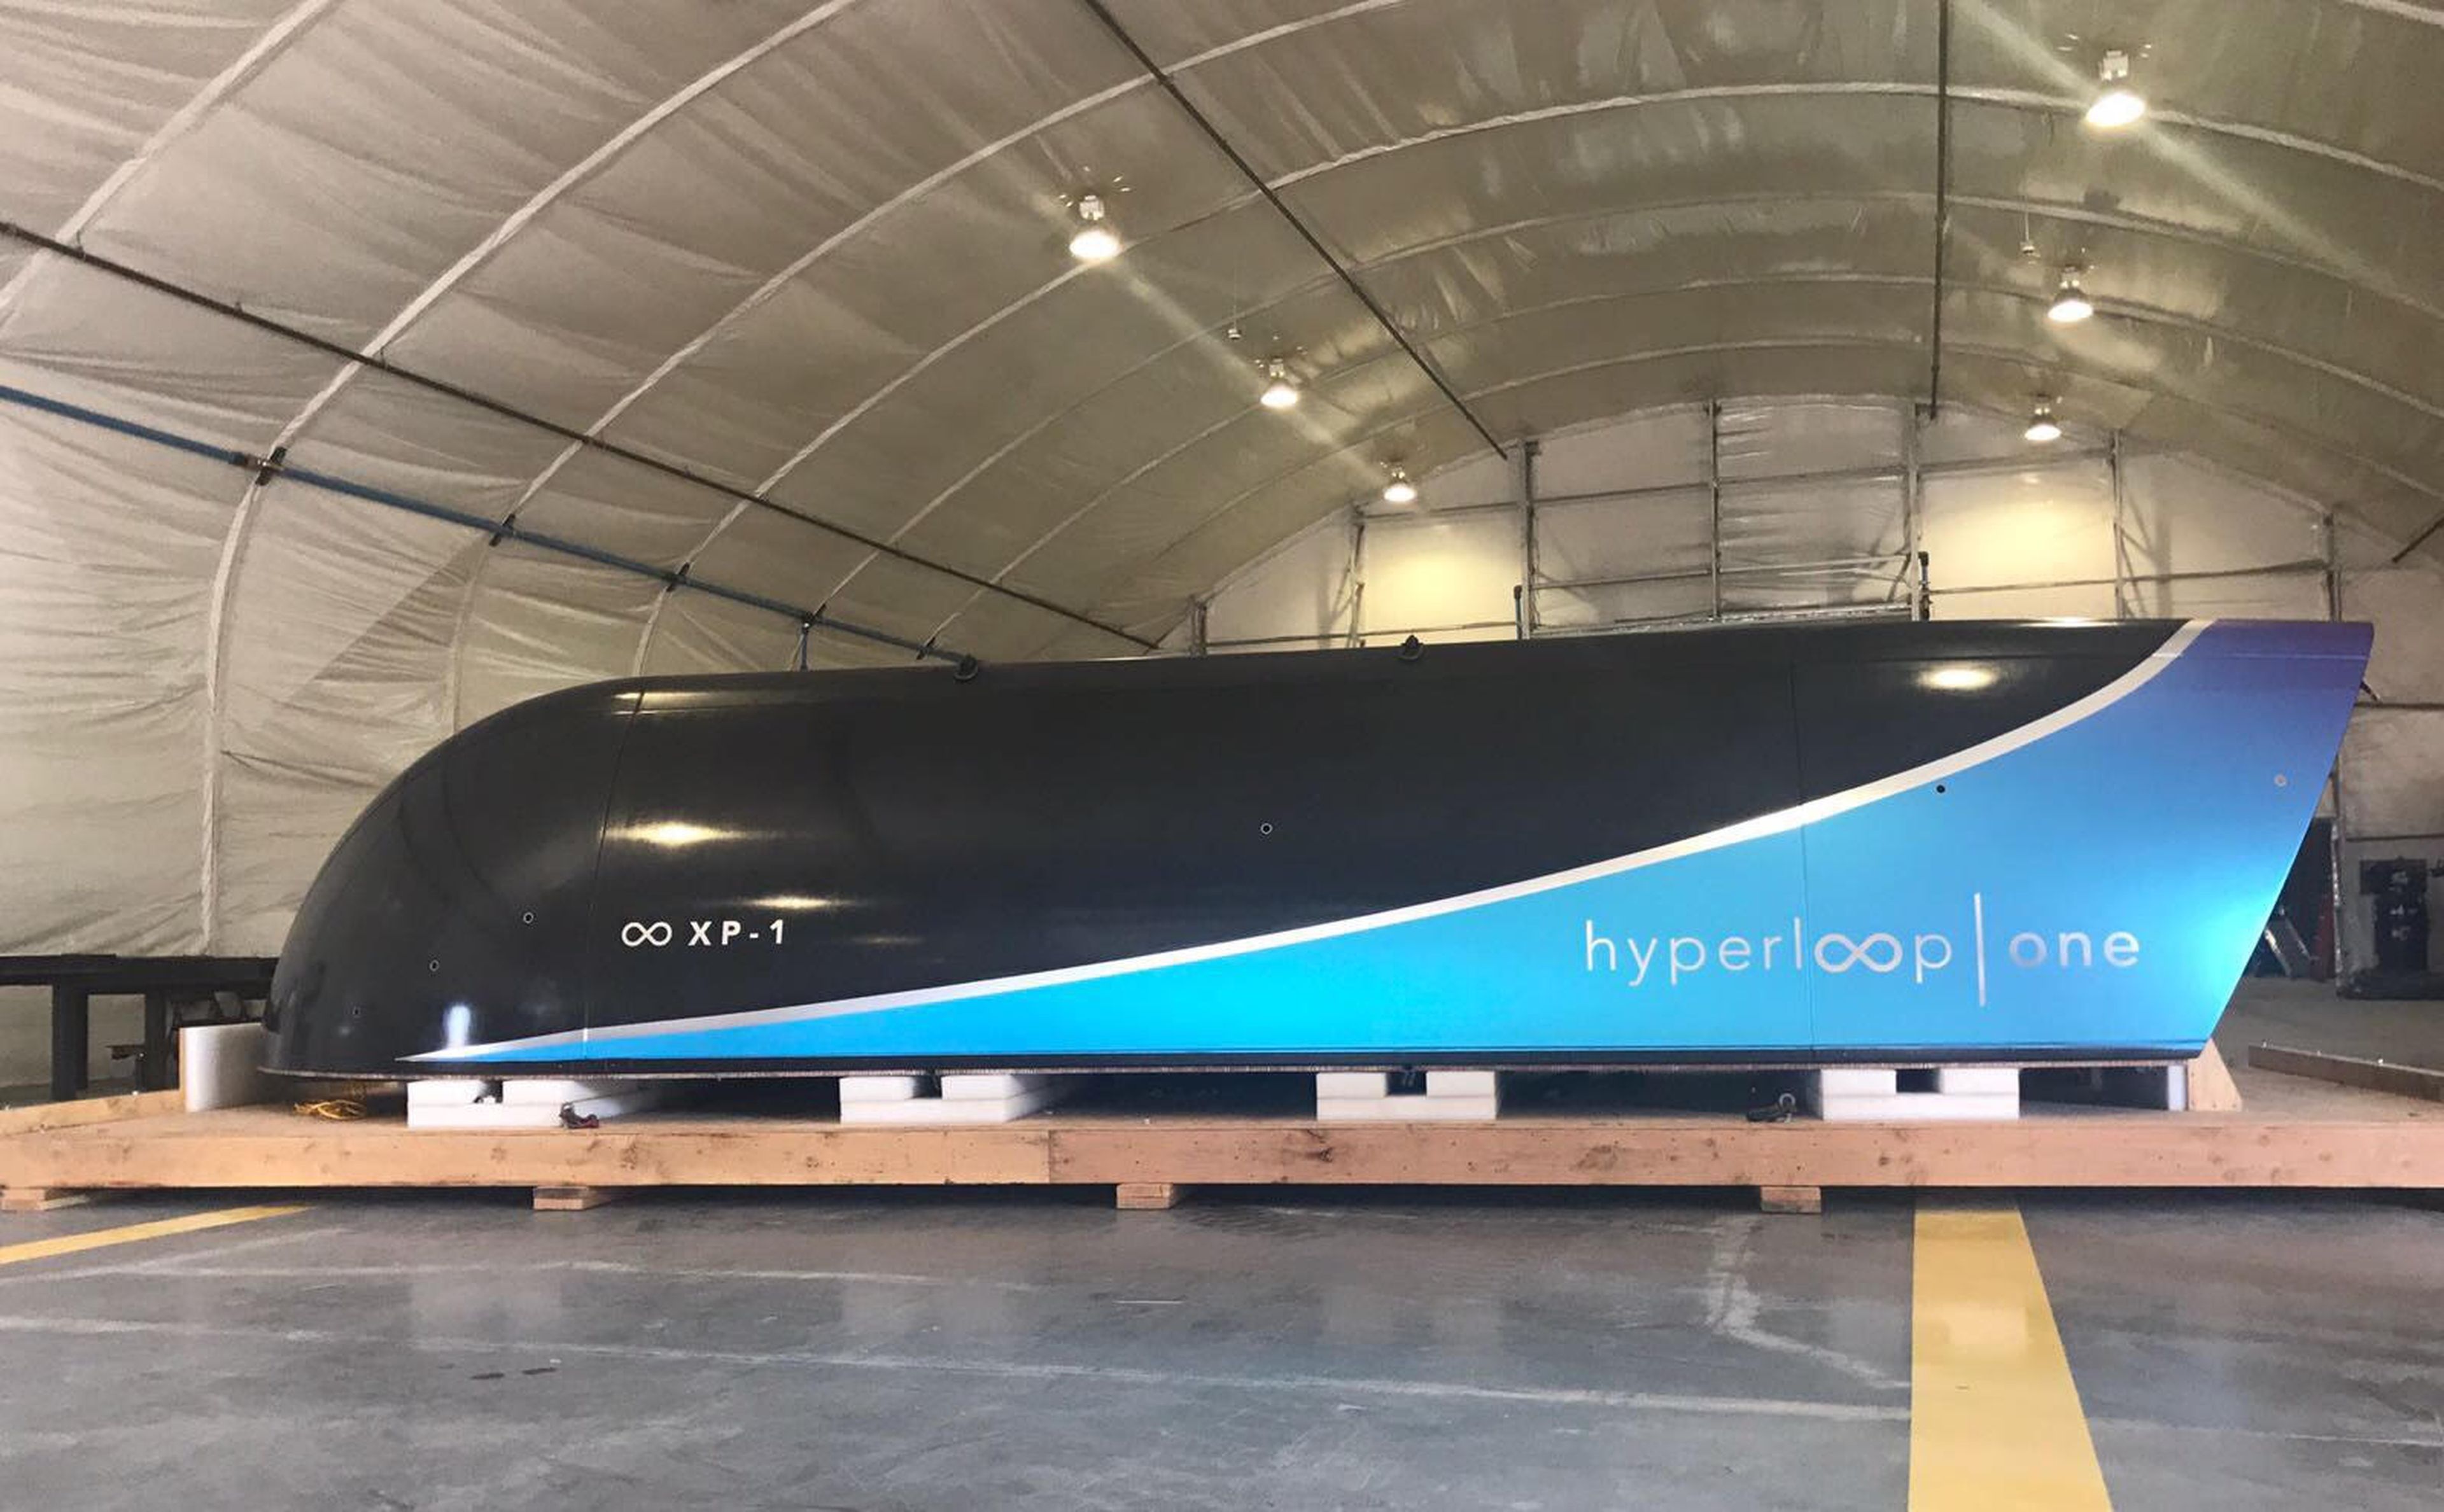 El hyperloop one ha marcado un hito en la historia del transporte superando su primer recorrido de prueba